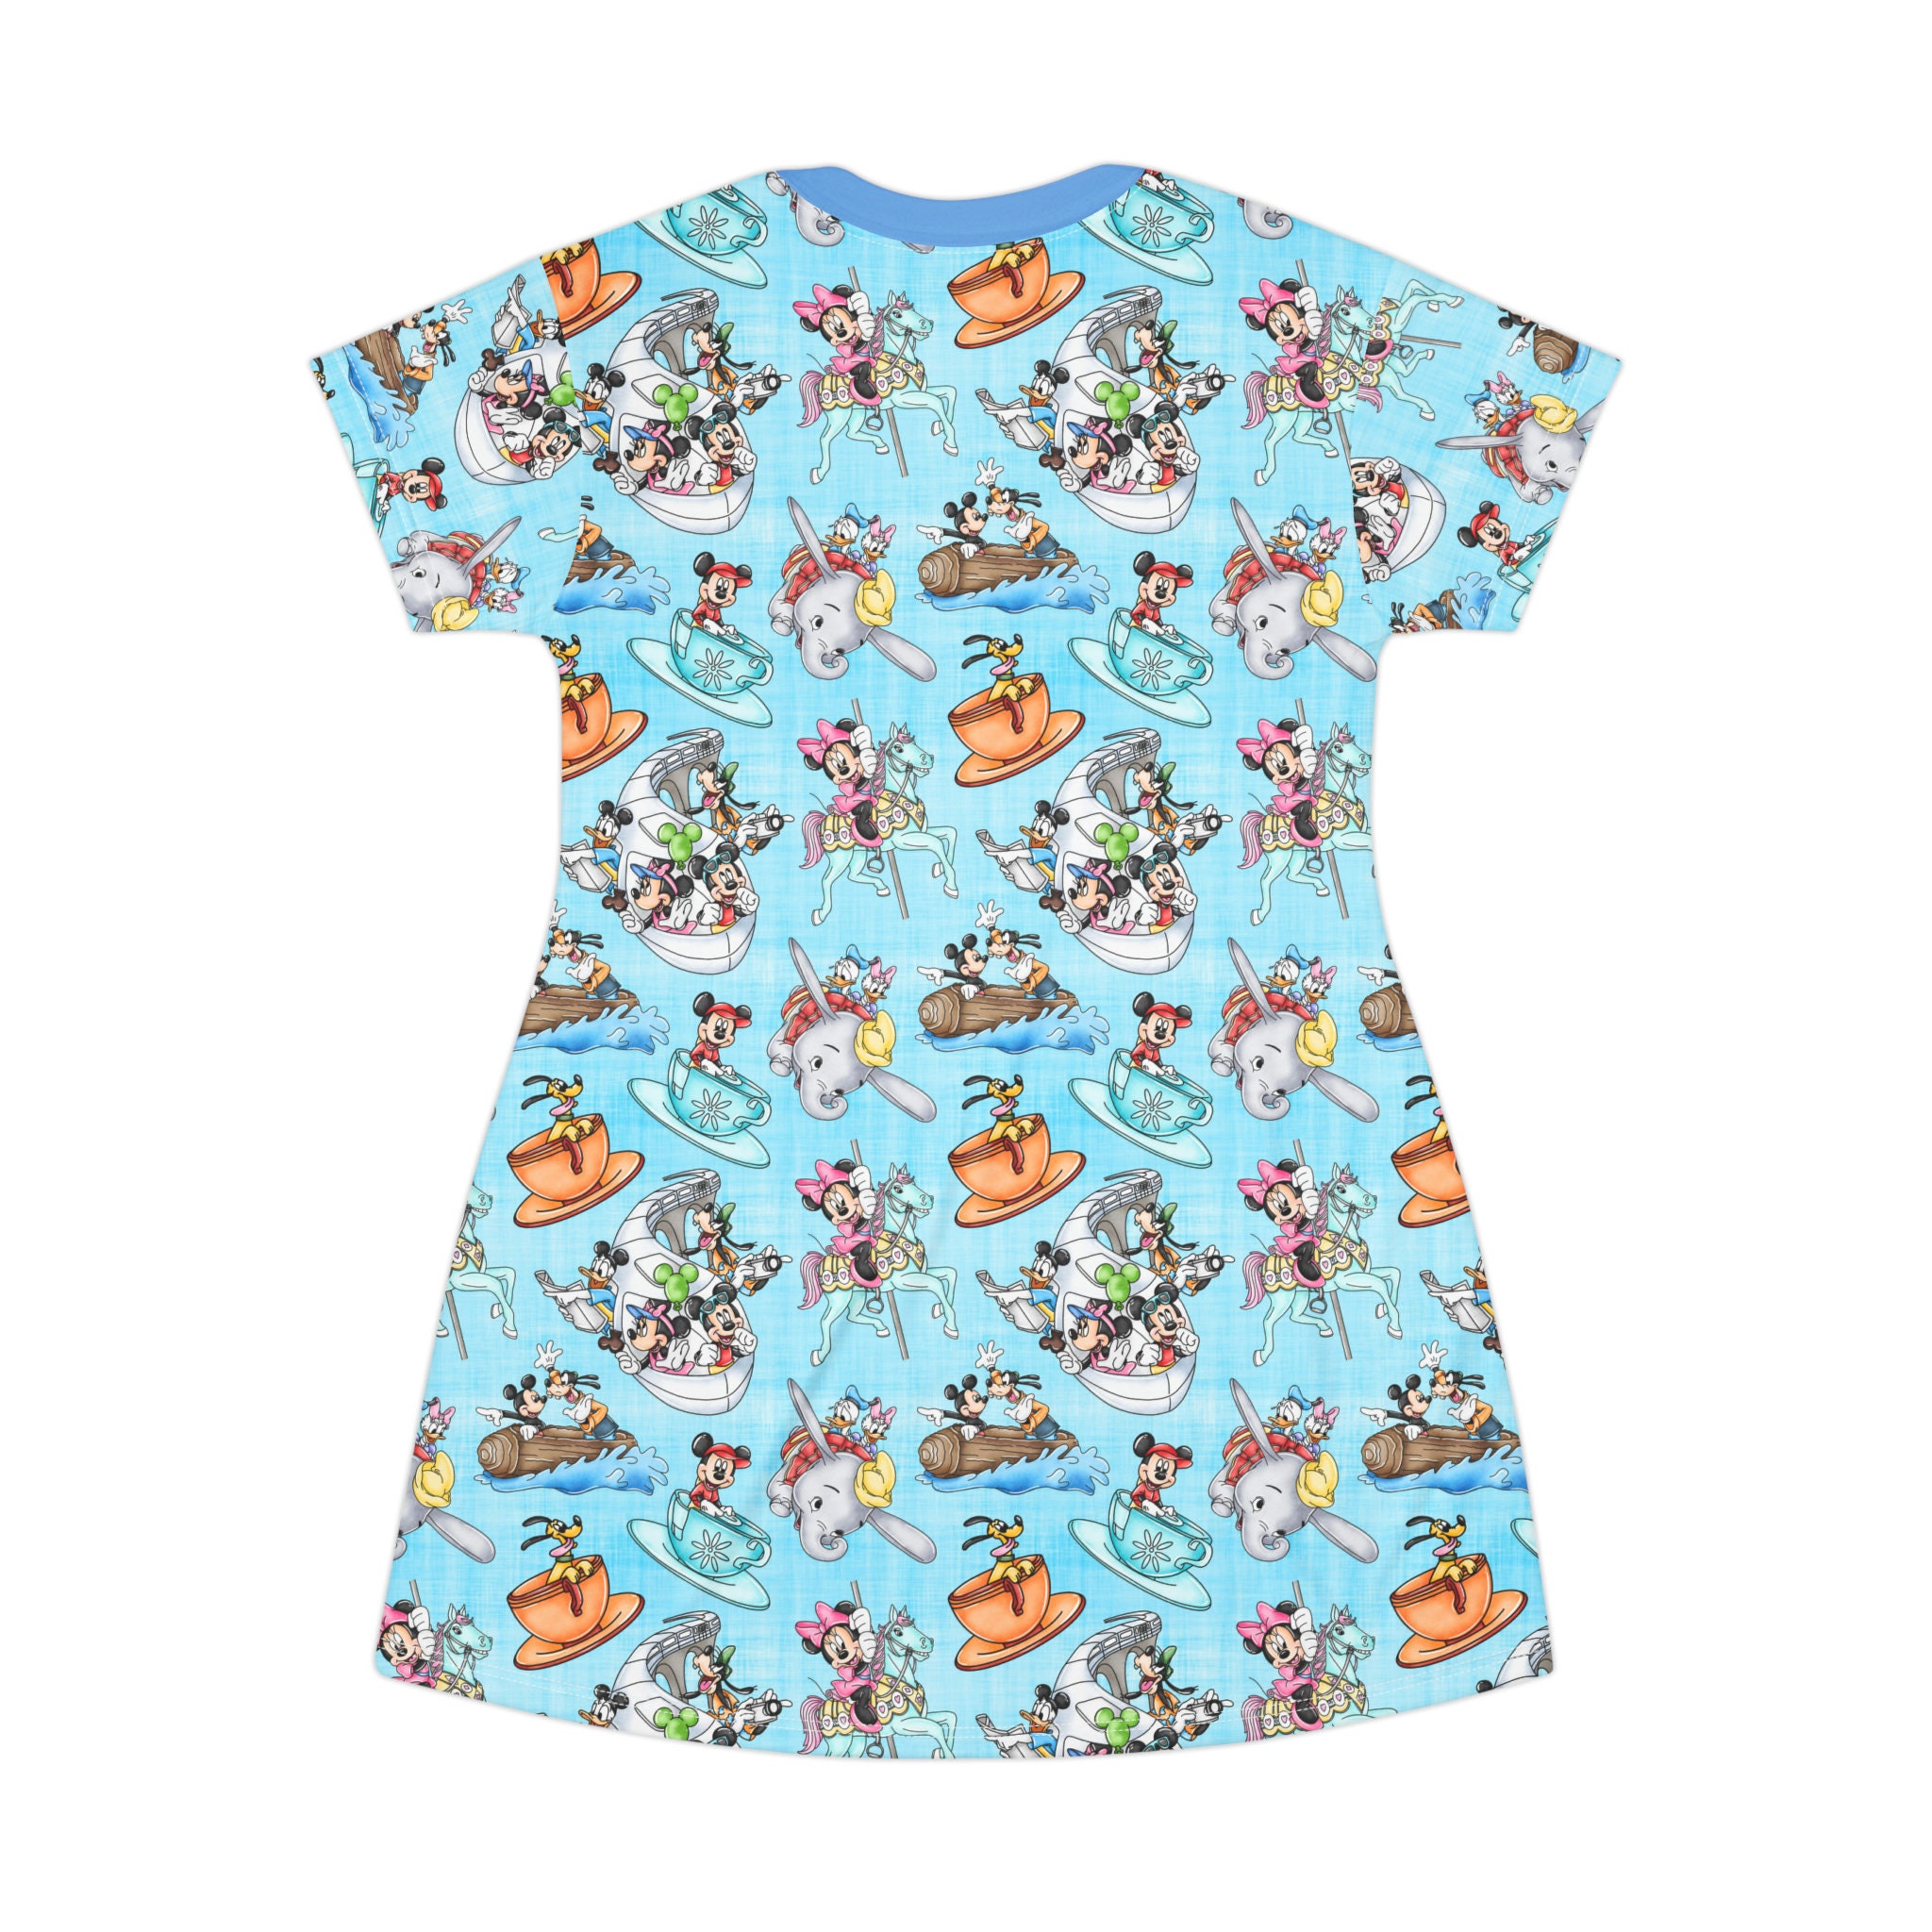 Disney Rides Disney T-Shirt Dress, Cartoon Women's T-Shirt Dress